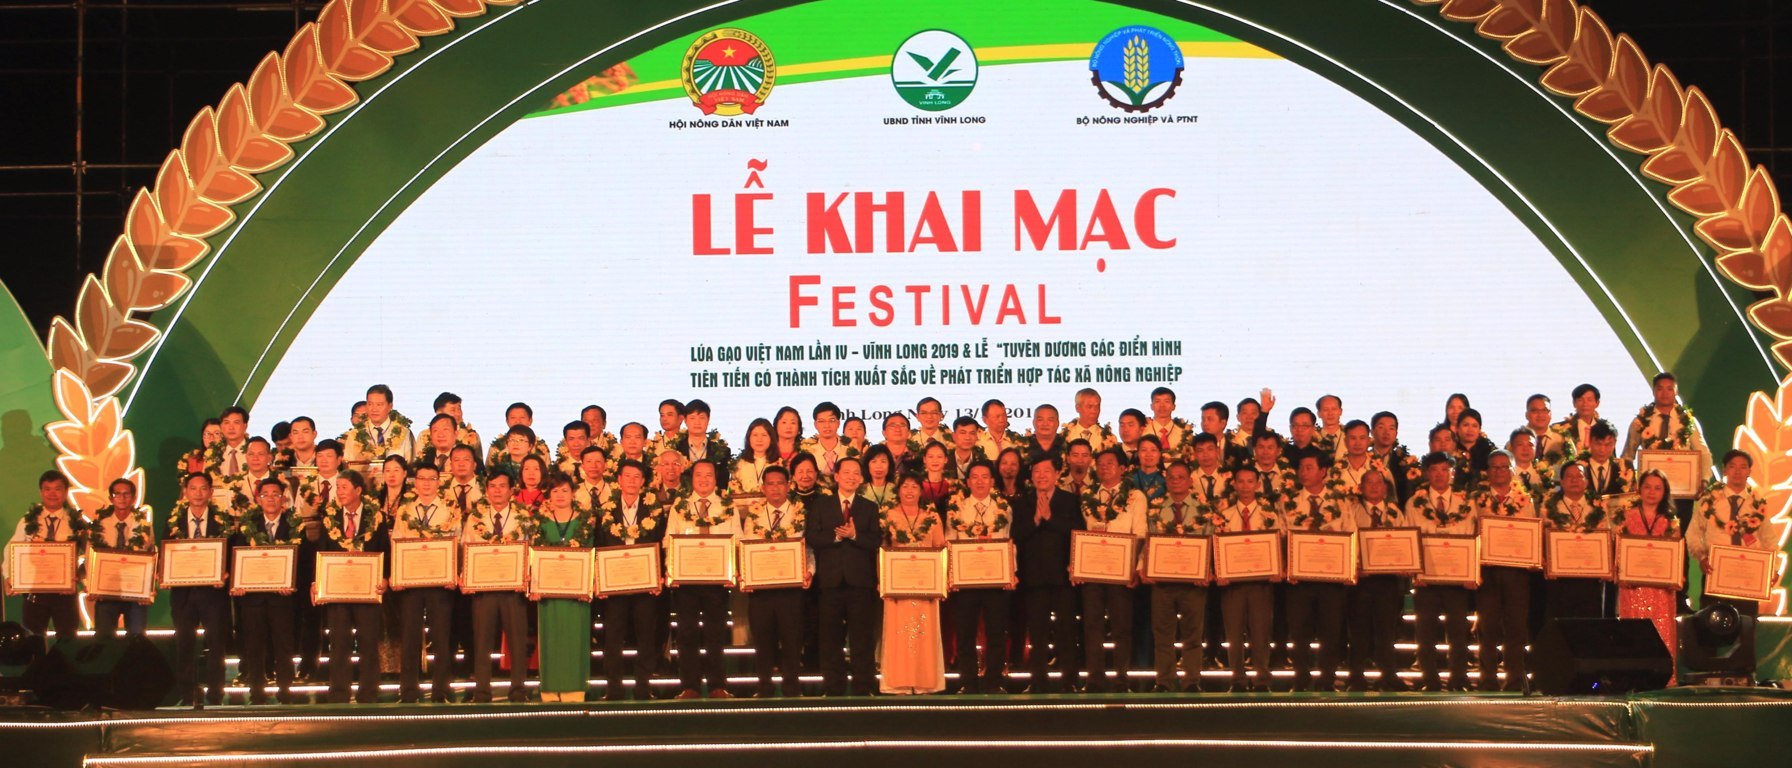 Khai mạc Festival Lúa gạo Việt Nam lần IV - Vĩnh Long năm 2019 